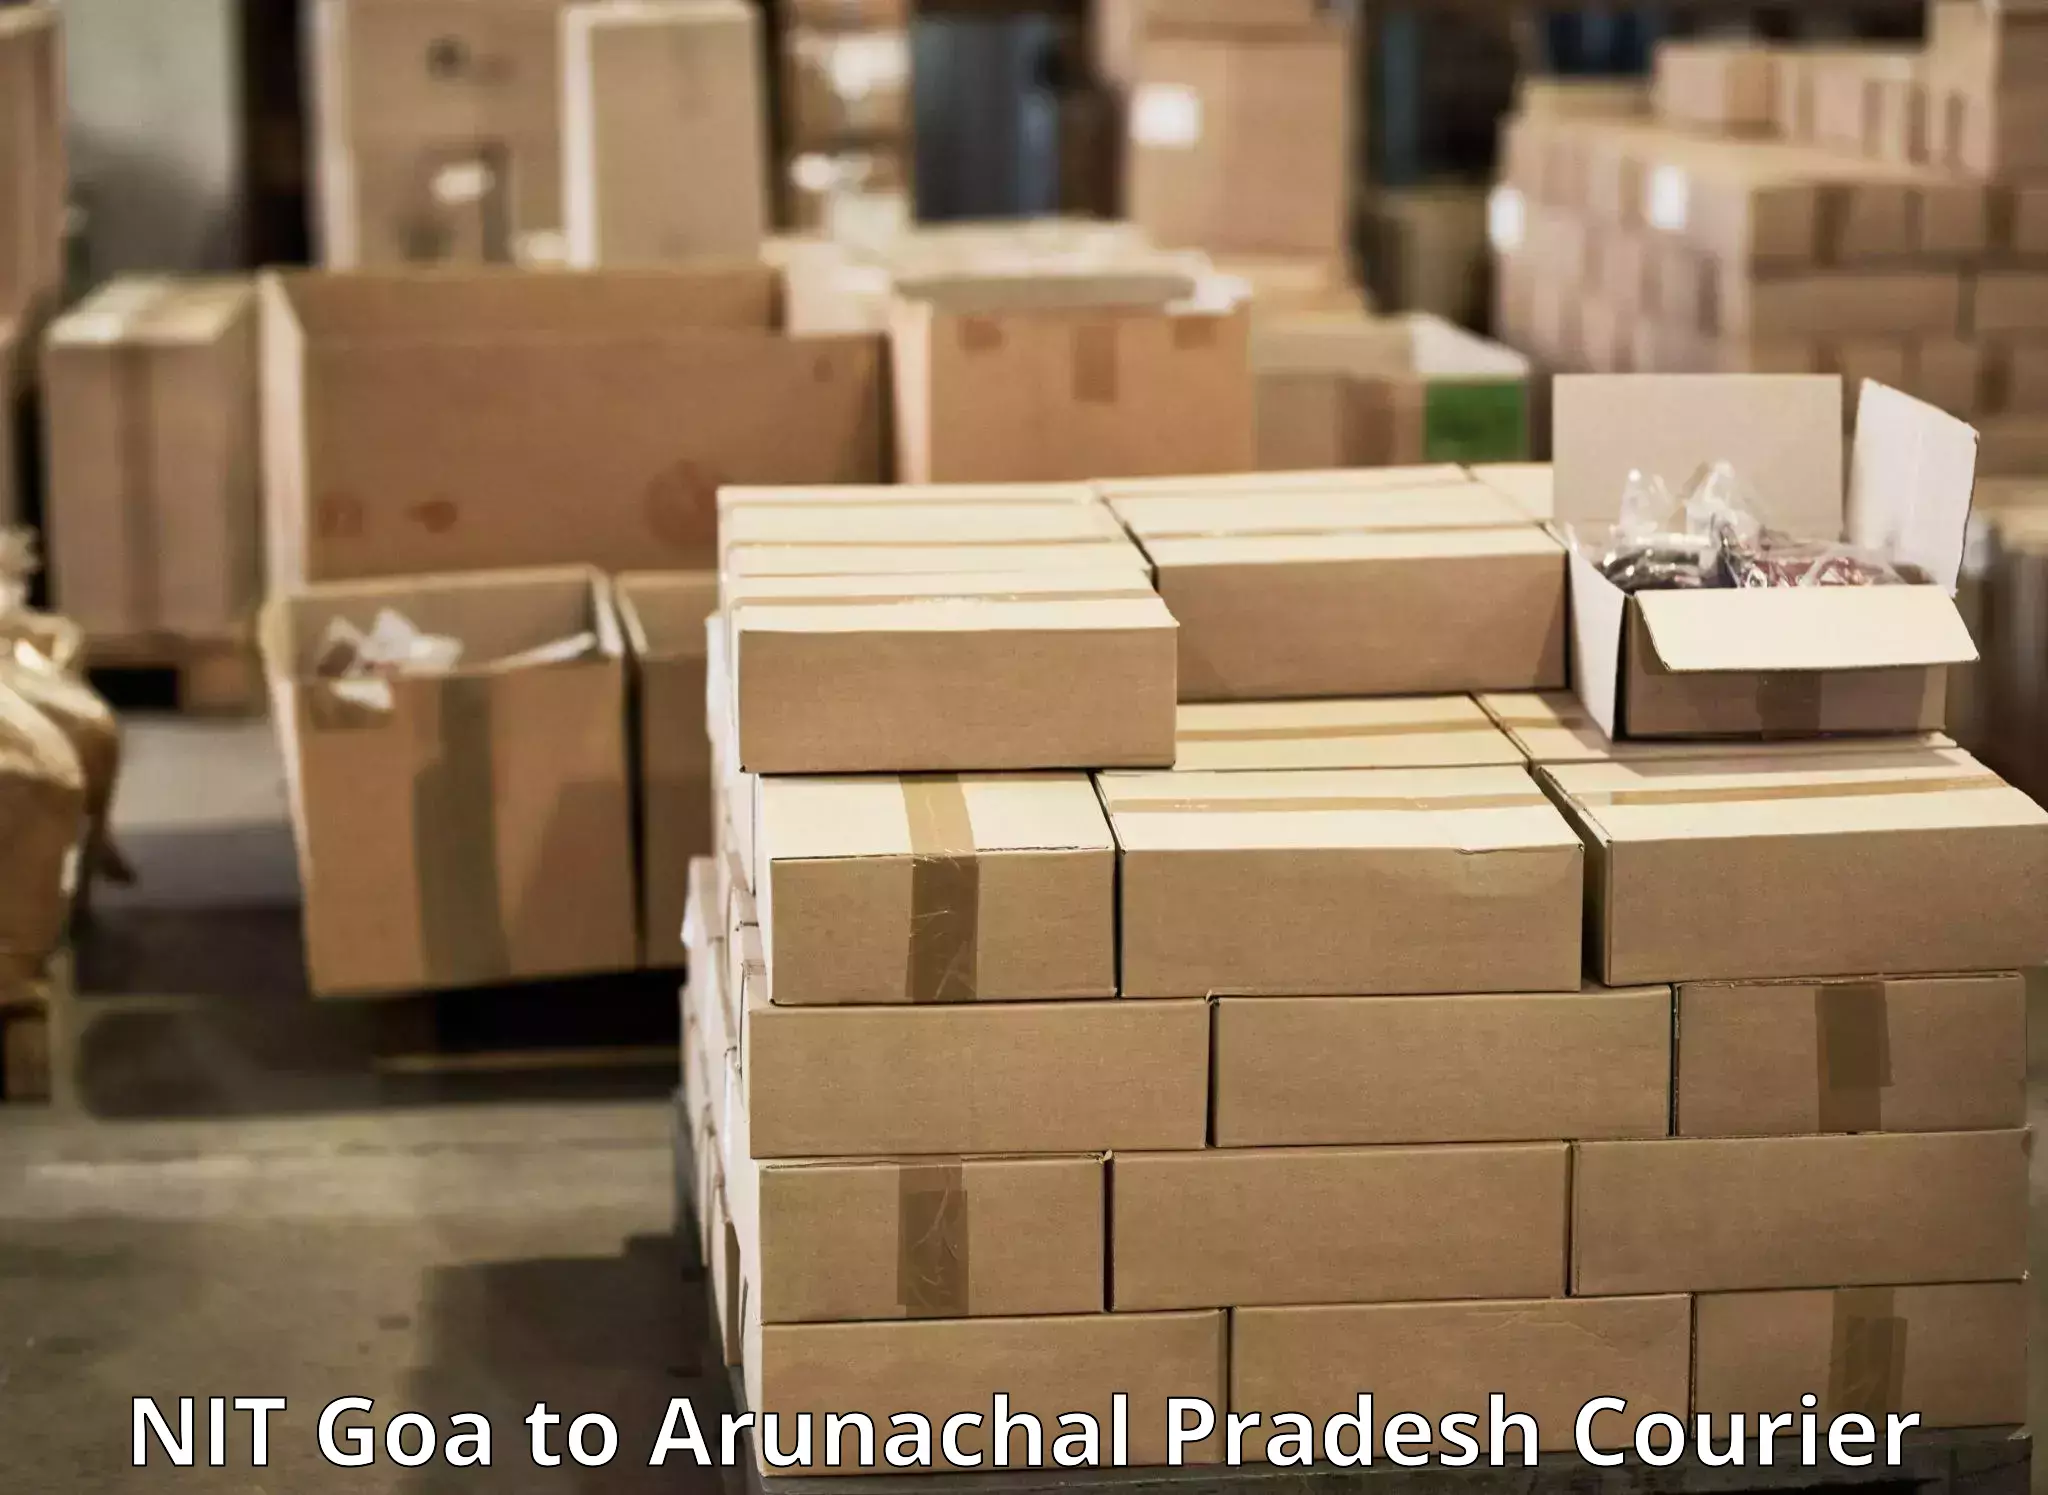 Express package handling NIT Goa to Arunachal Pradesh